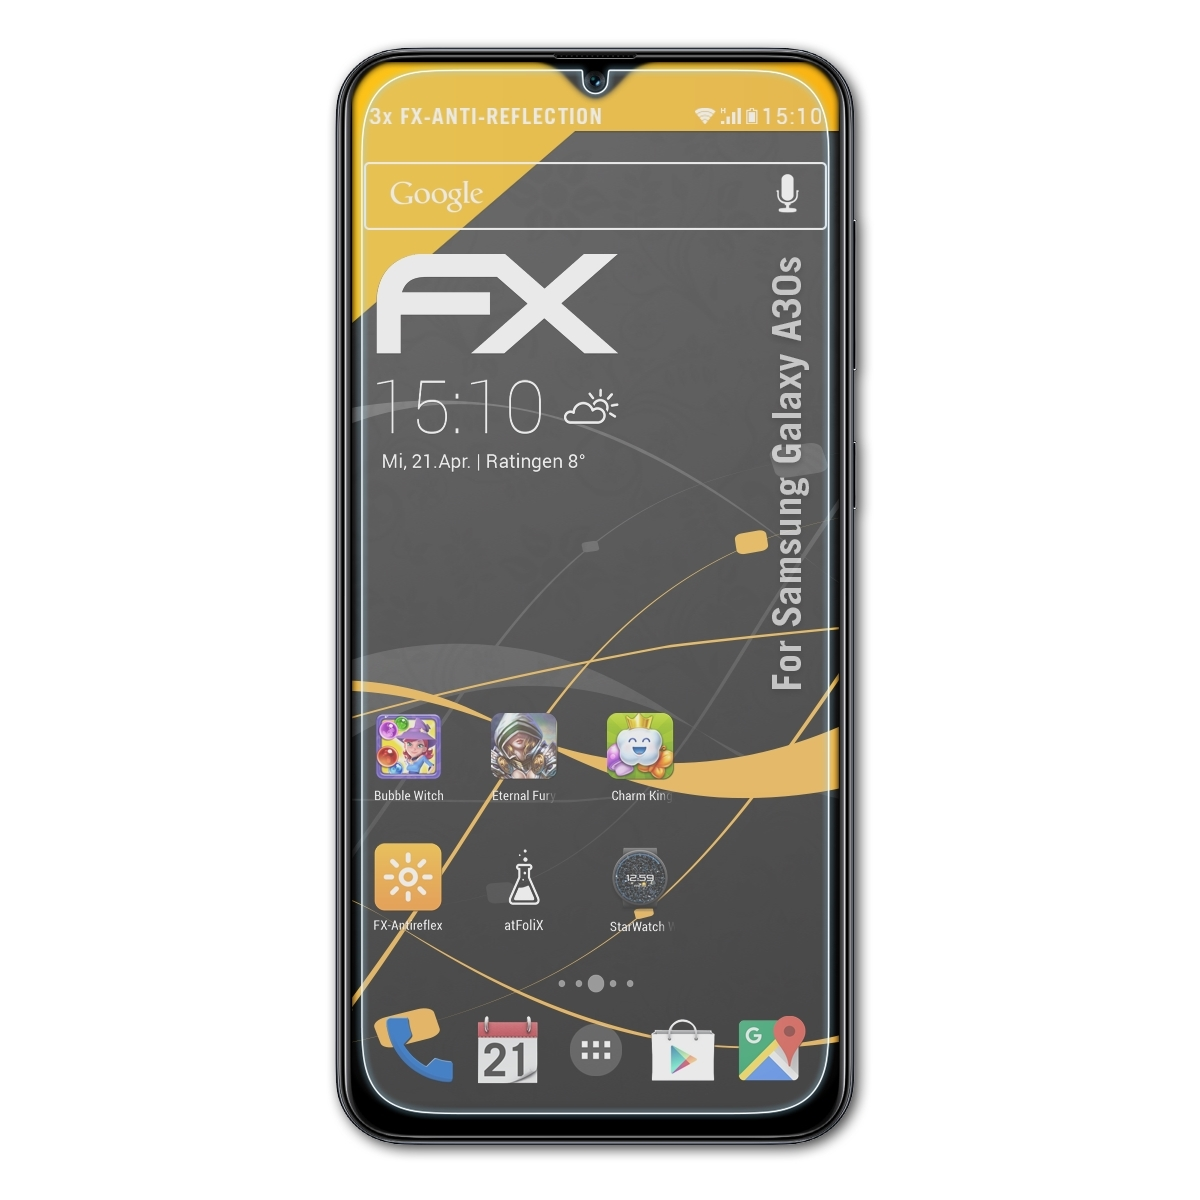 Galaxy FX-Antireflex A30s) Samsung Displayschutz(für ATFOLIX 3x